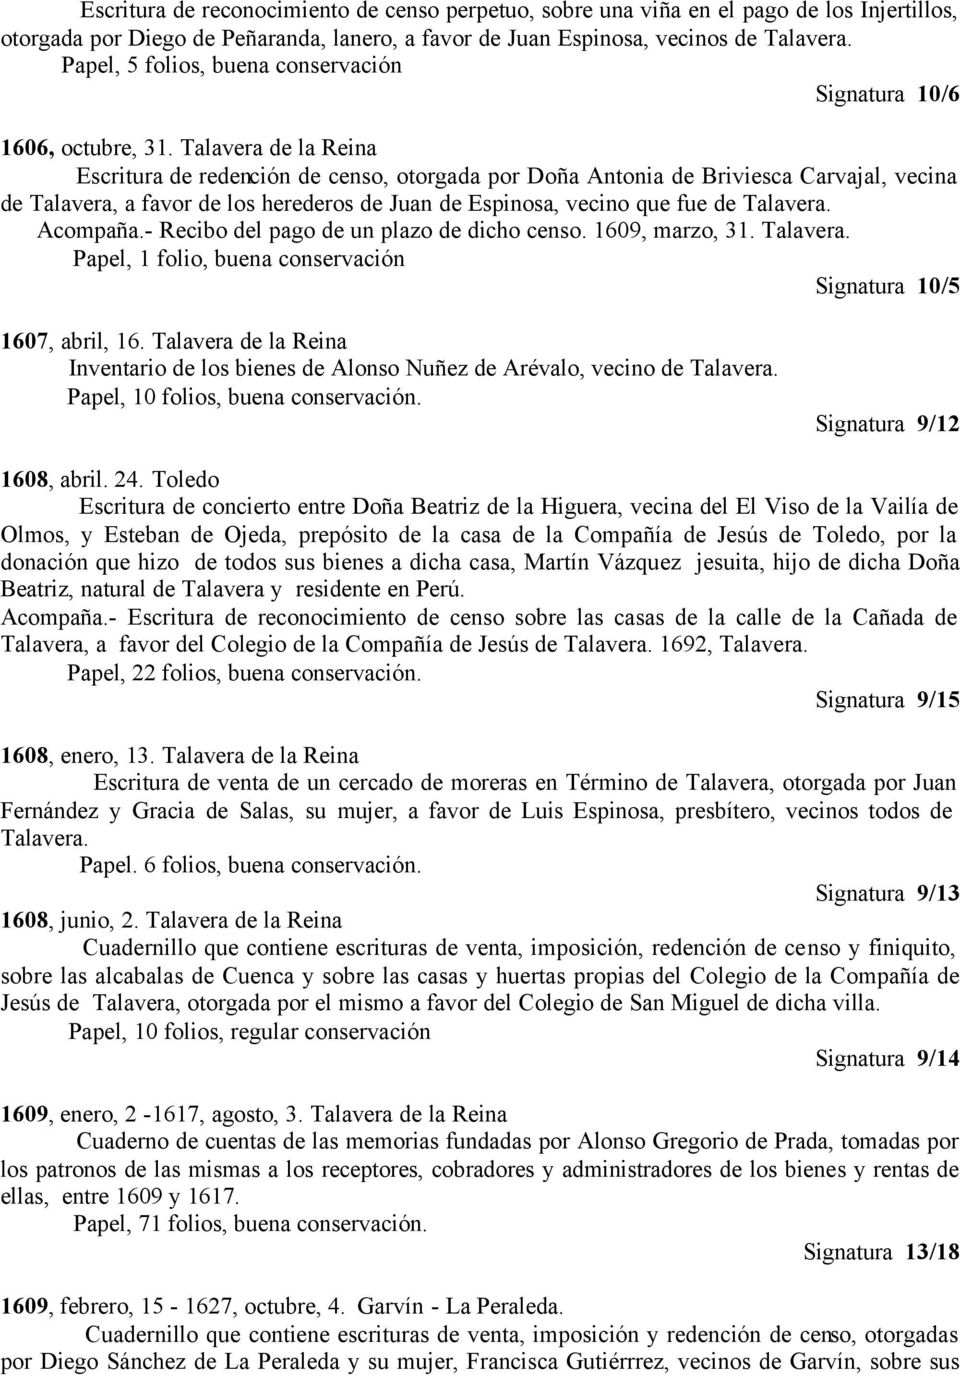 Talavera de la Reina Escritura de redención de censo, otorgada por Doña Antonia de Briviesca Carvajal, vecina de Talavera, a favor de los herederos de Juan de Espinosa, vecino que fue de Talavera.